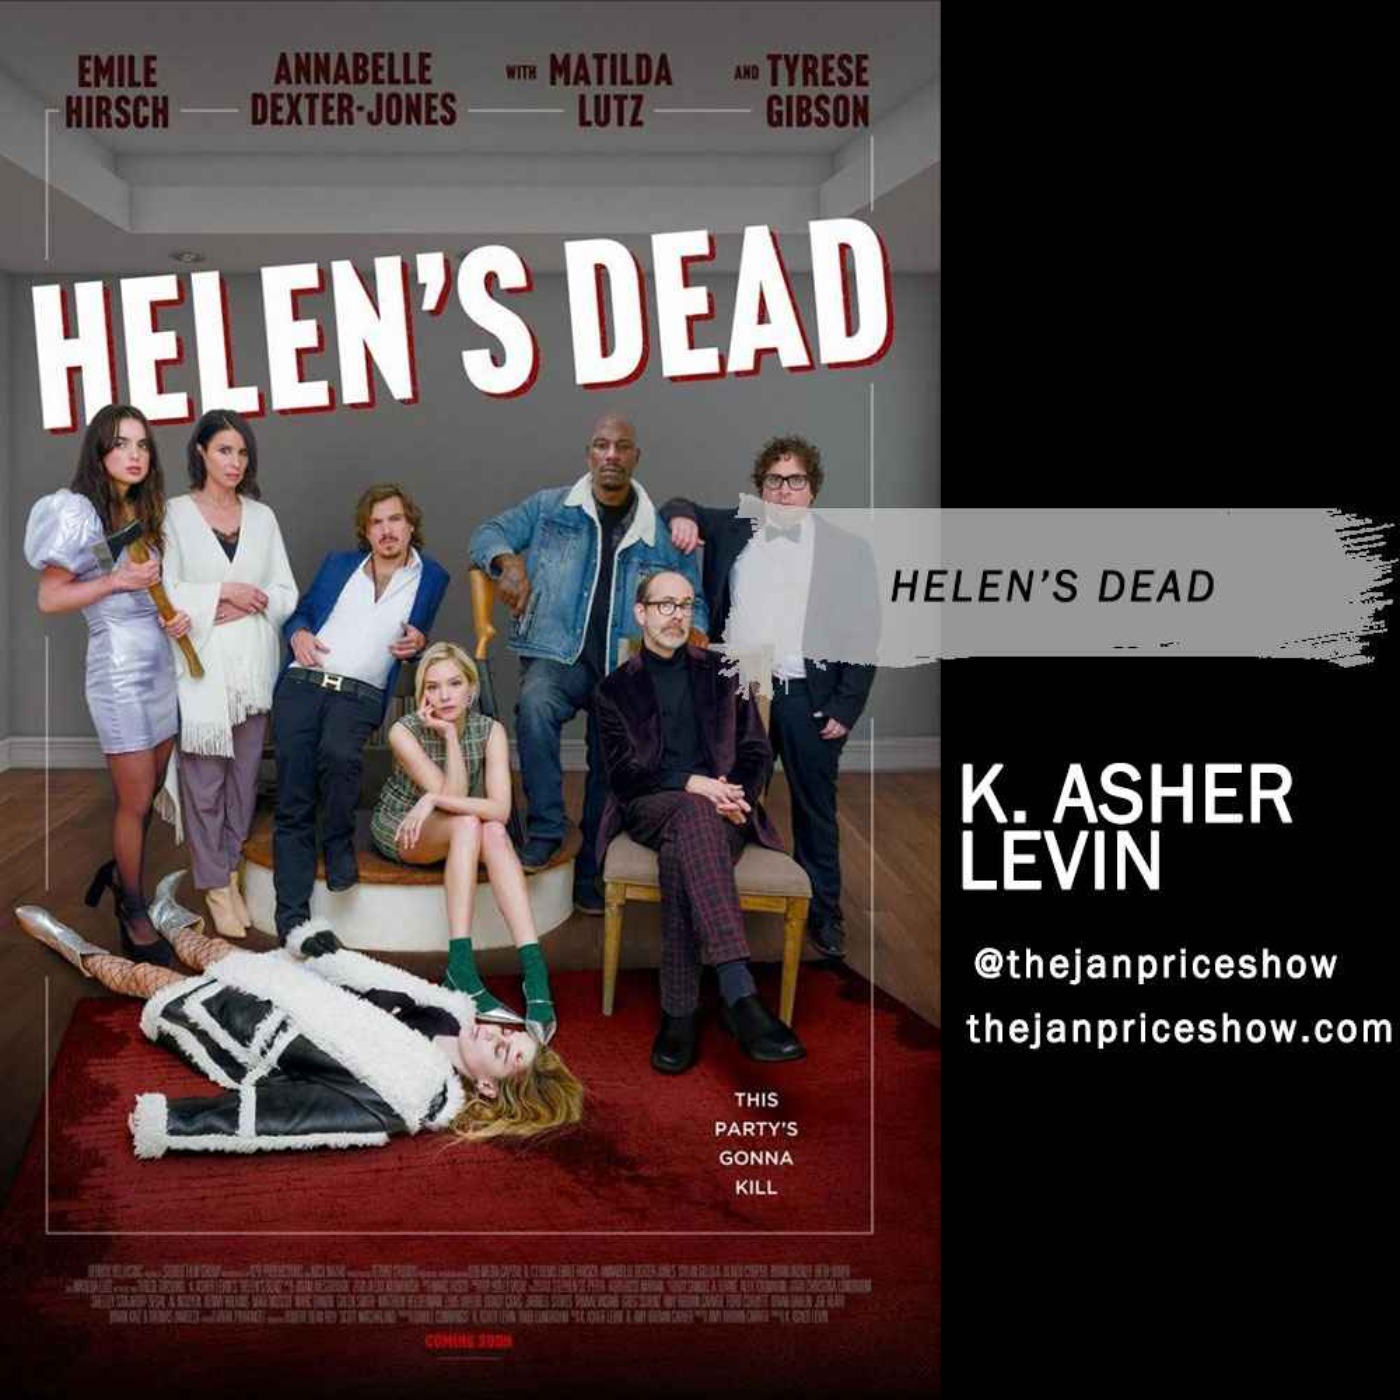 K. Asher Levin - Helen’s Dead